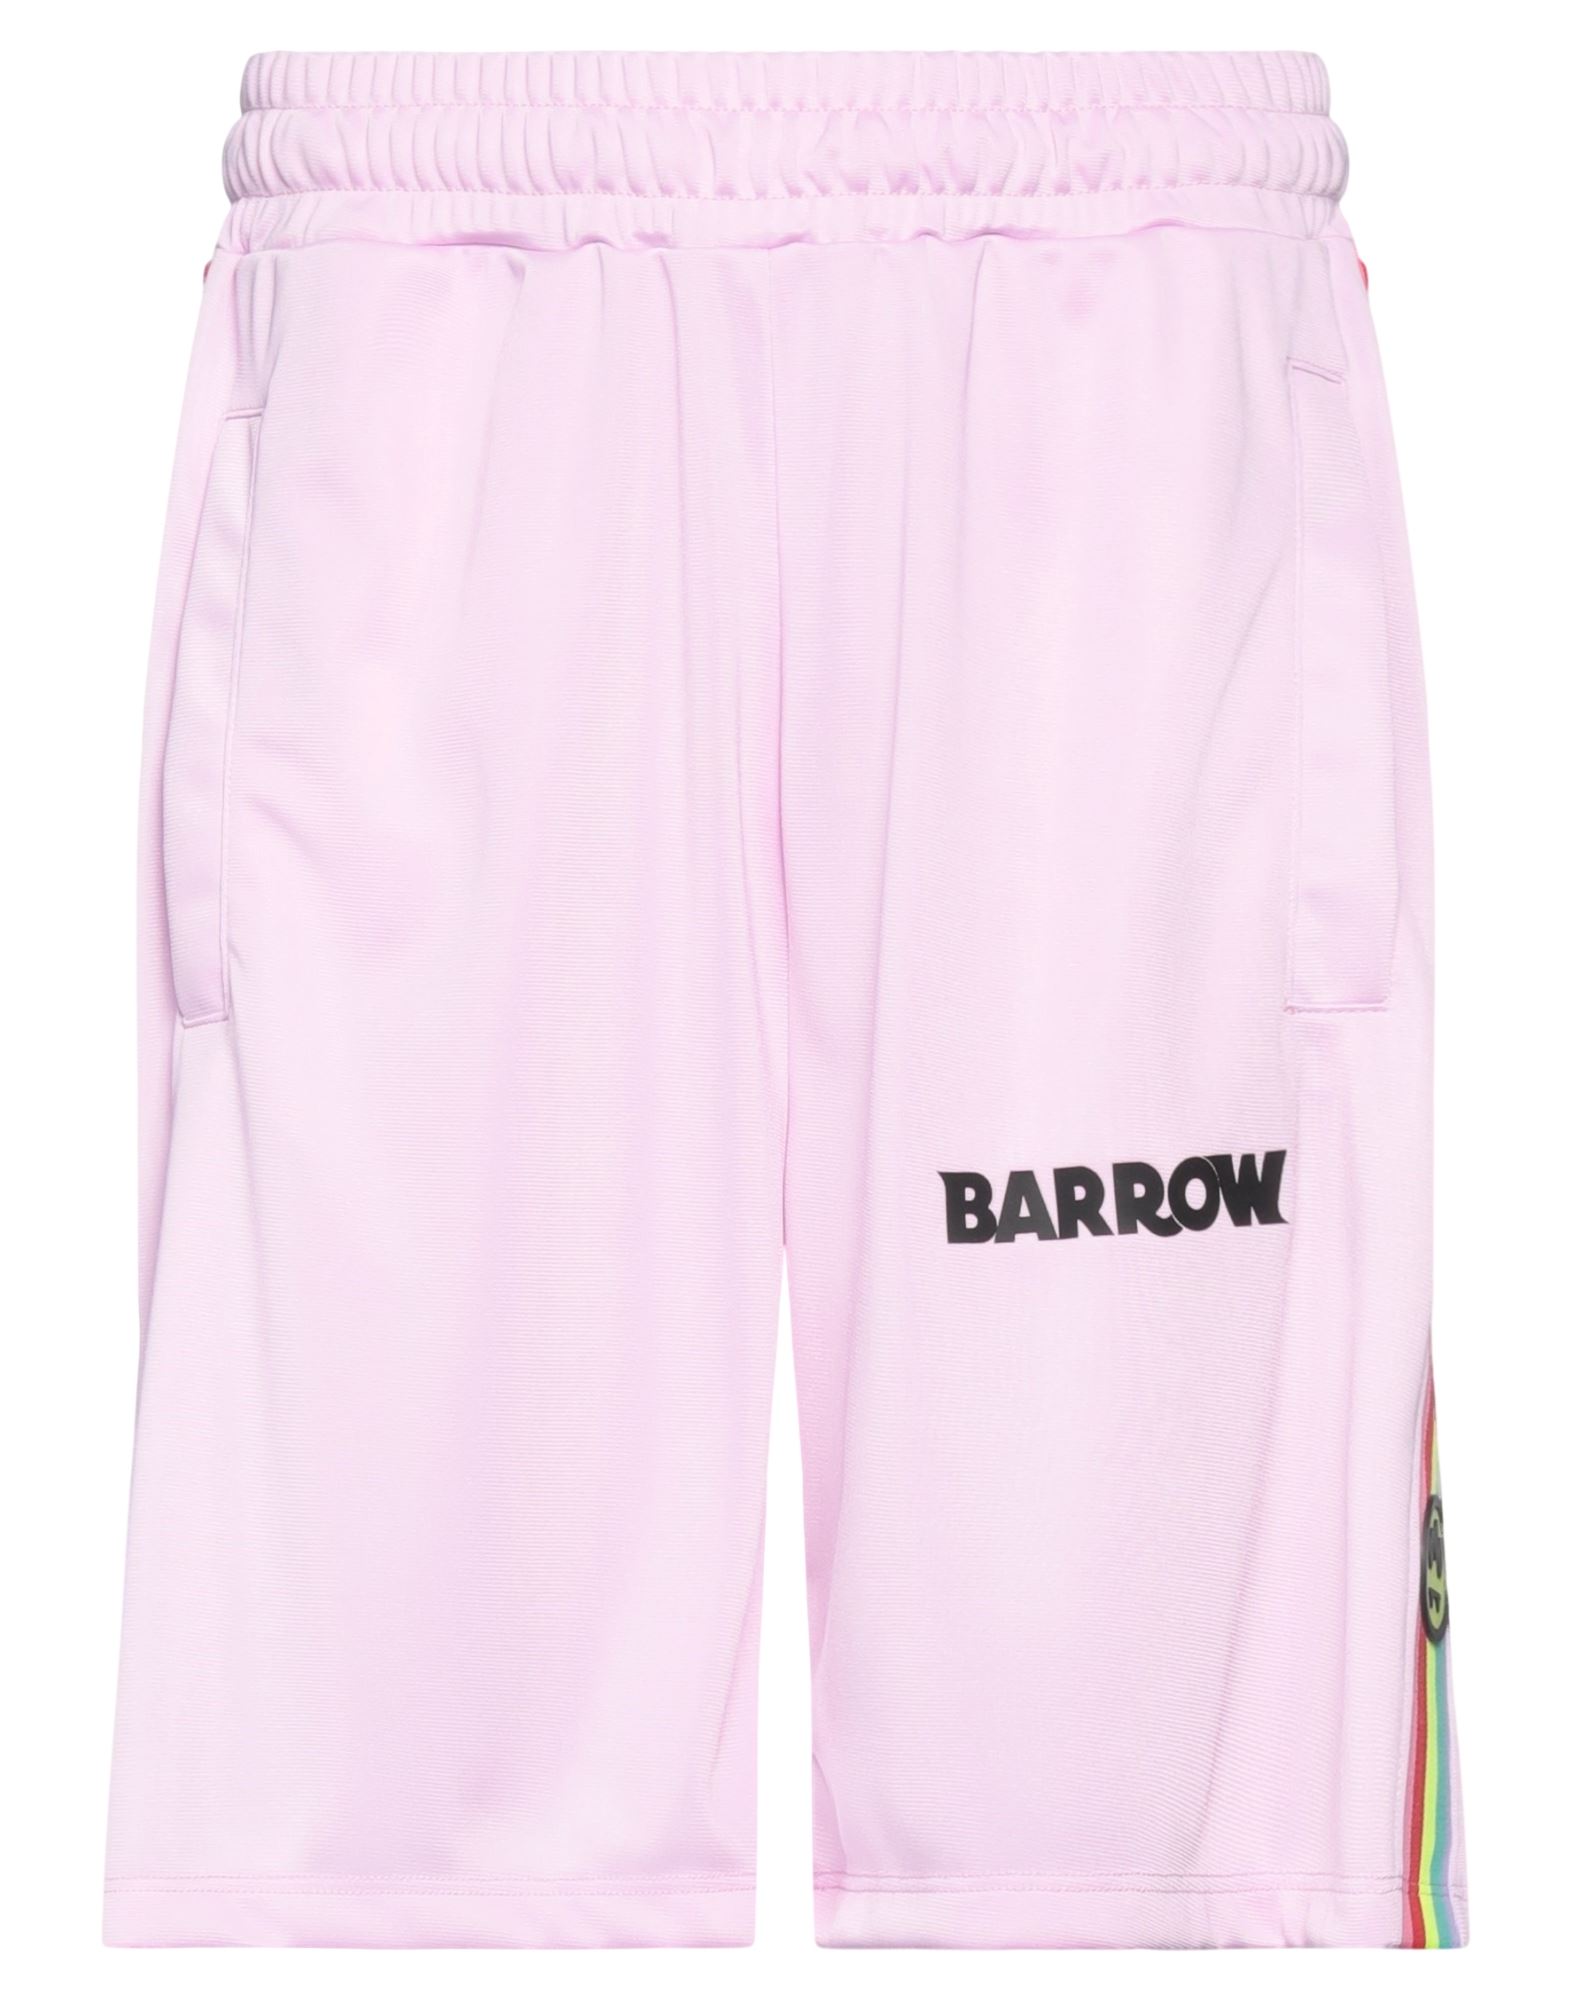 Barrow Man Shorts & Bermuda Shorts Pink Size L Polyester